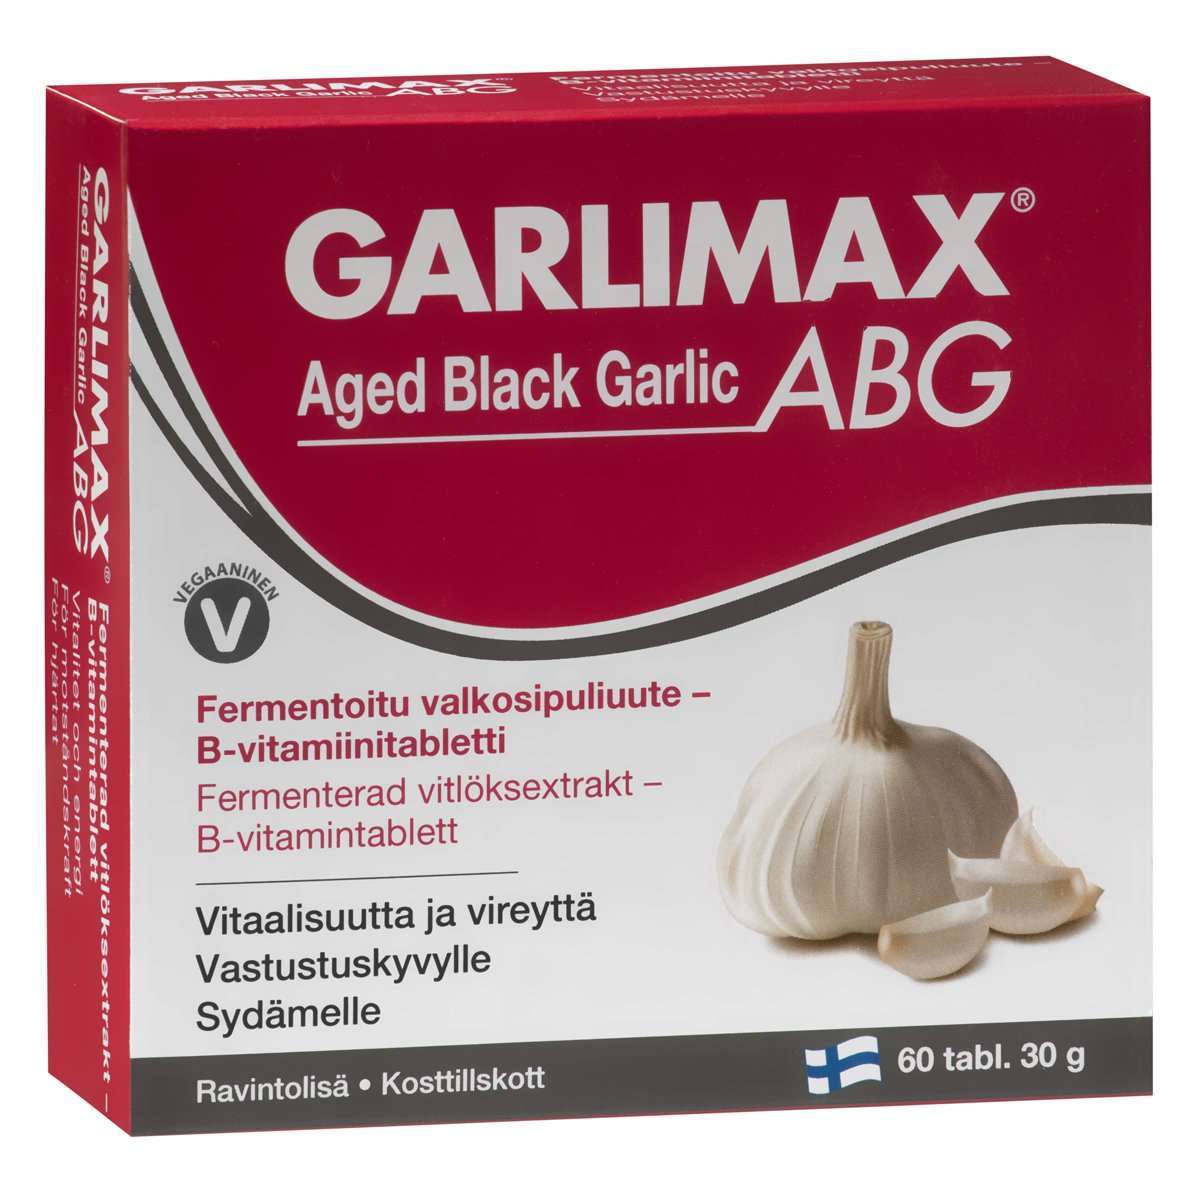 Garlimax ABG-Hankintatukku-Hyvinvoinnin Tavaratalo